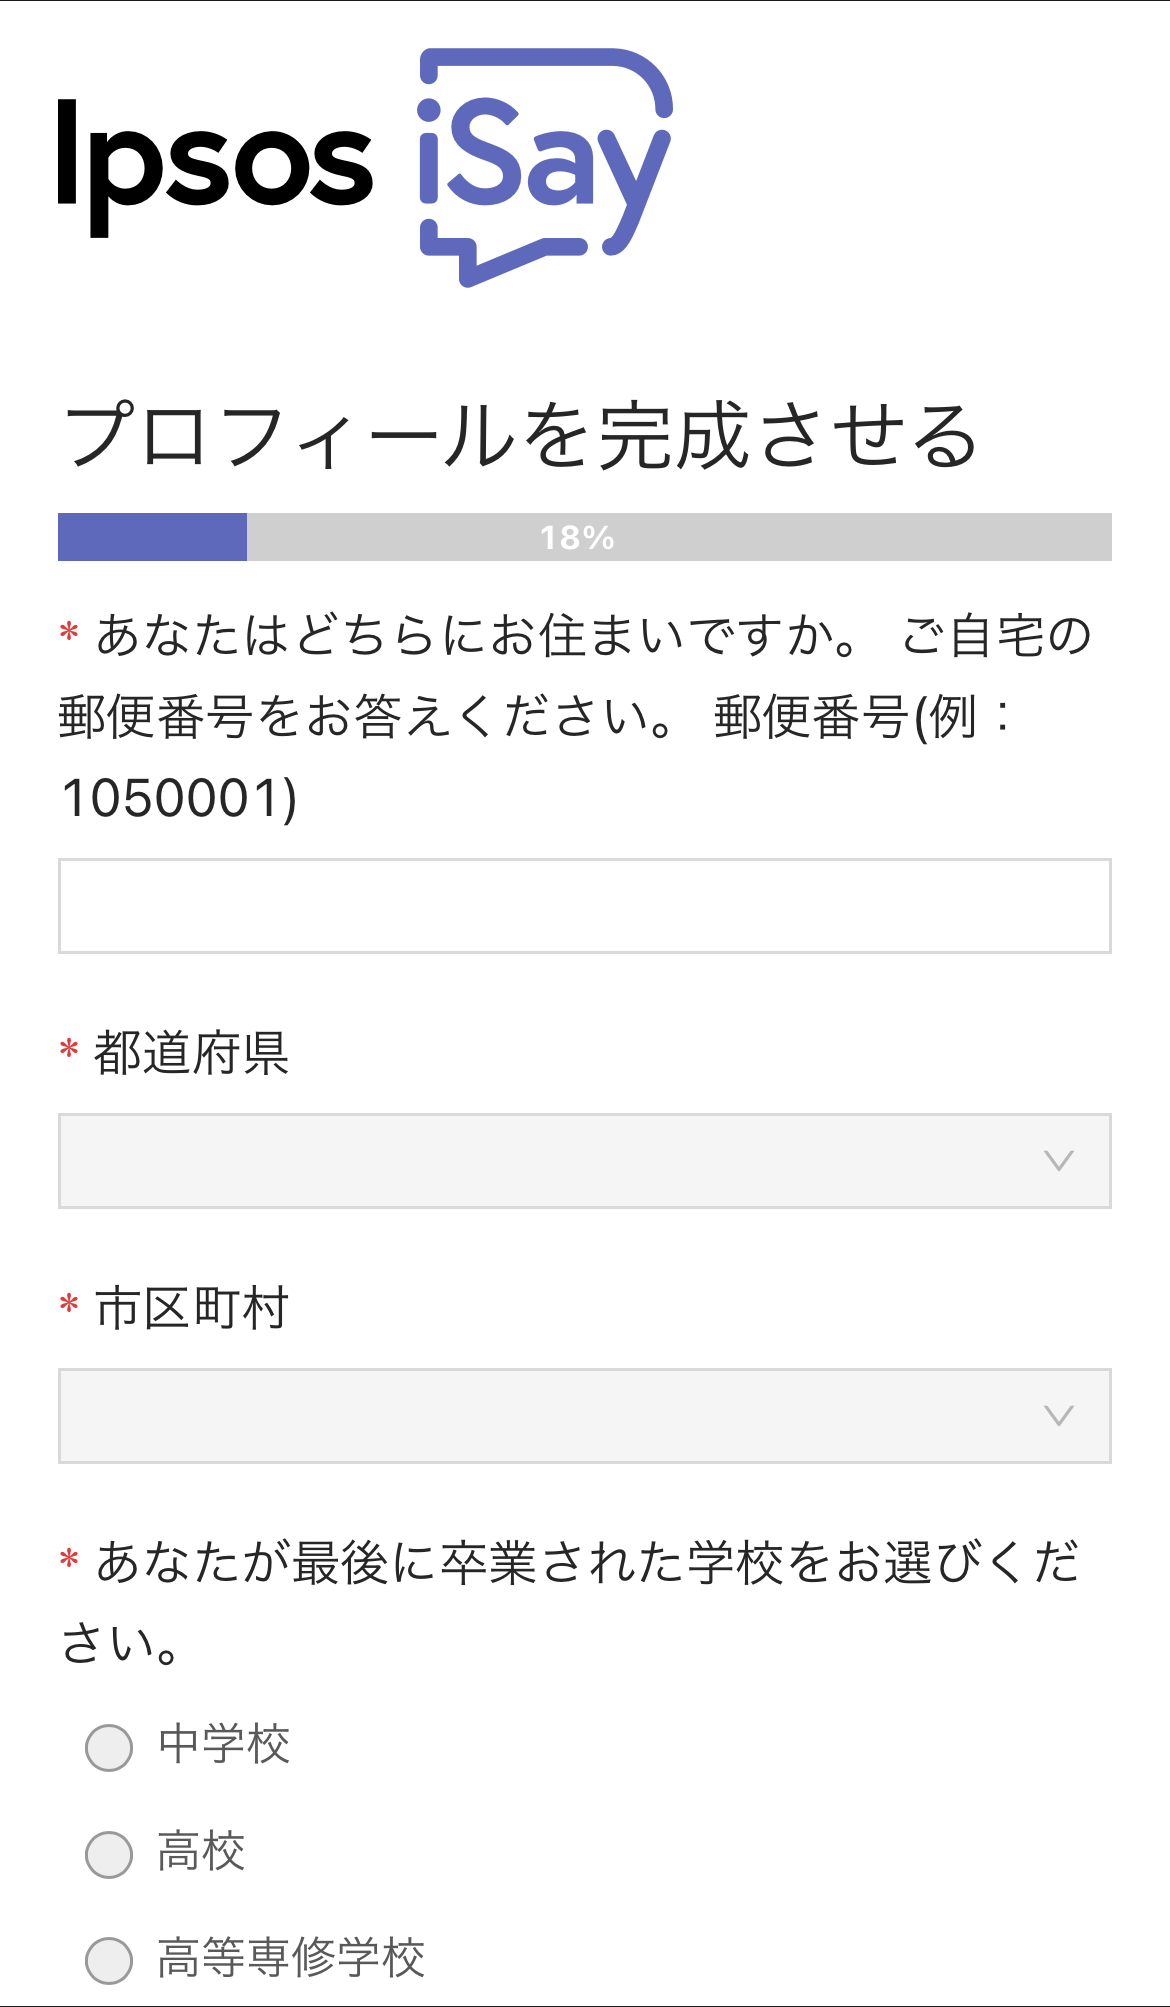 6分で完了】Ipsos iSayの登録方法・始め方 | 東京に住むIT系会社員のBLOG